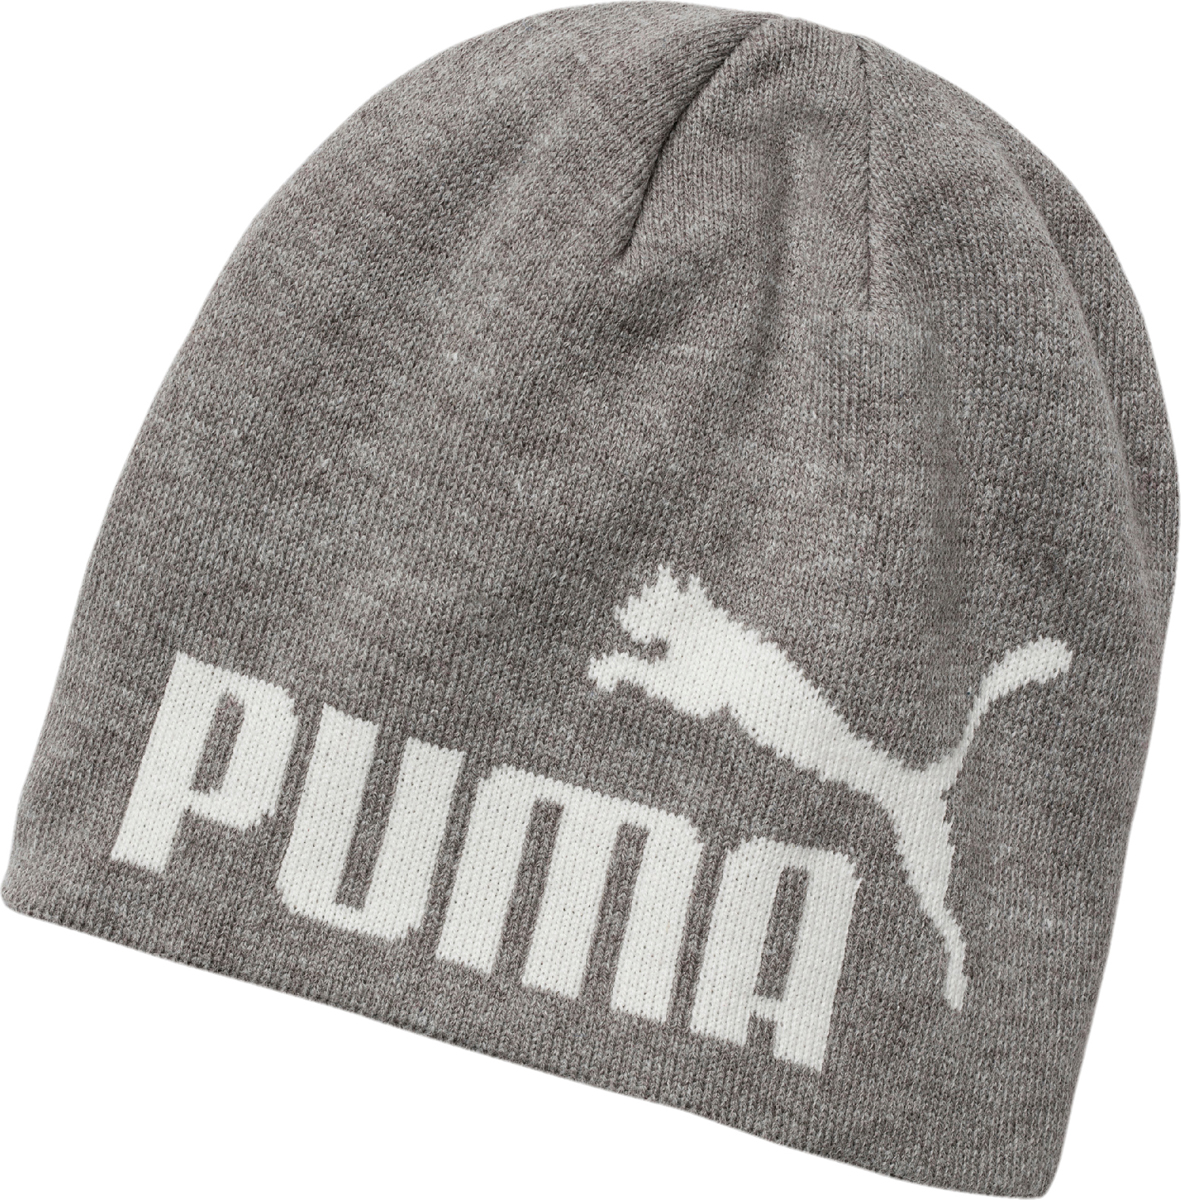 Шапка Puma Ess Big Cat Beanie, цвет: светло-серый. 05292541. Размер универсальный